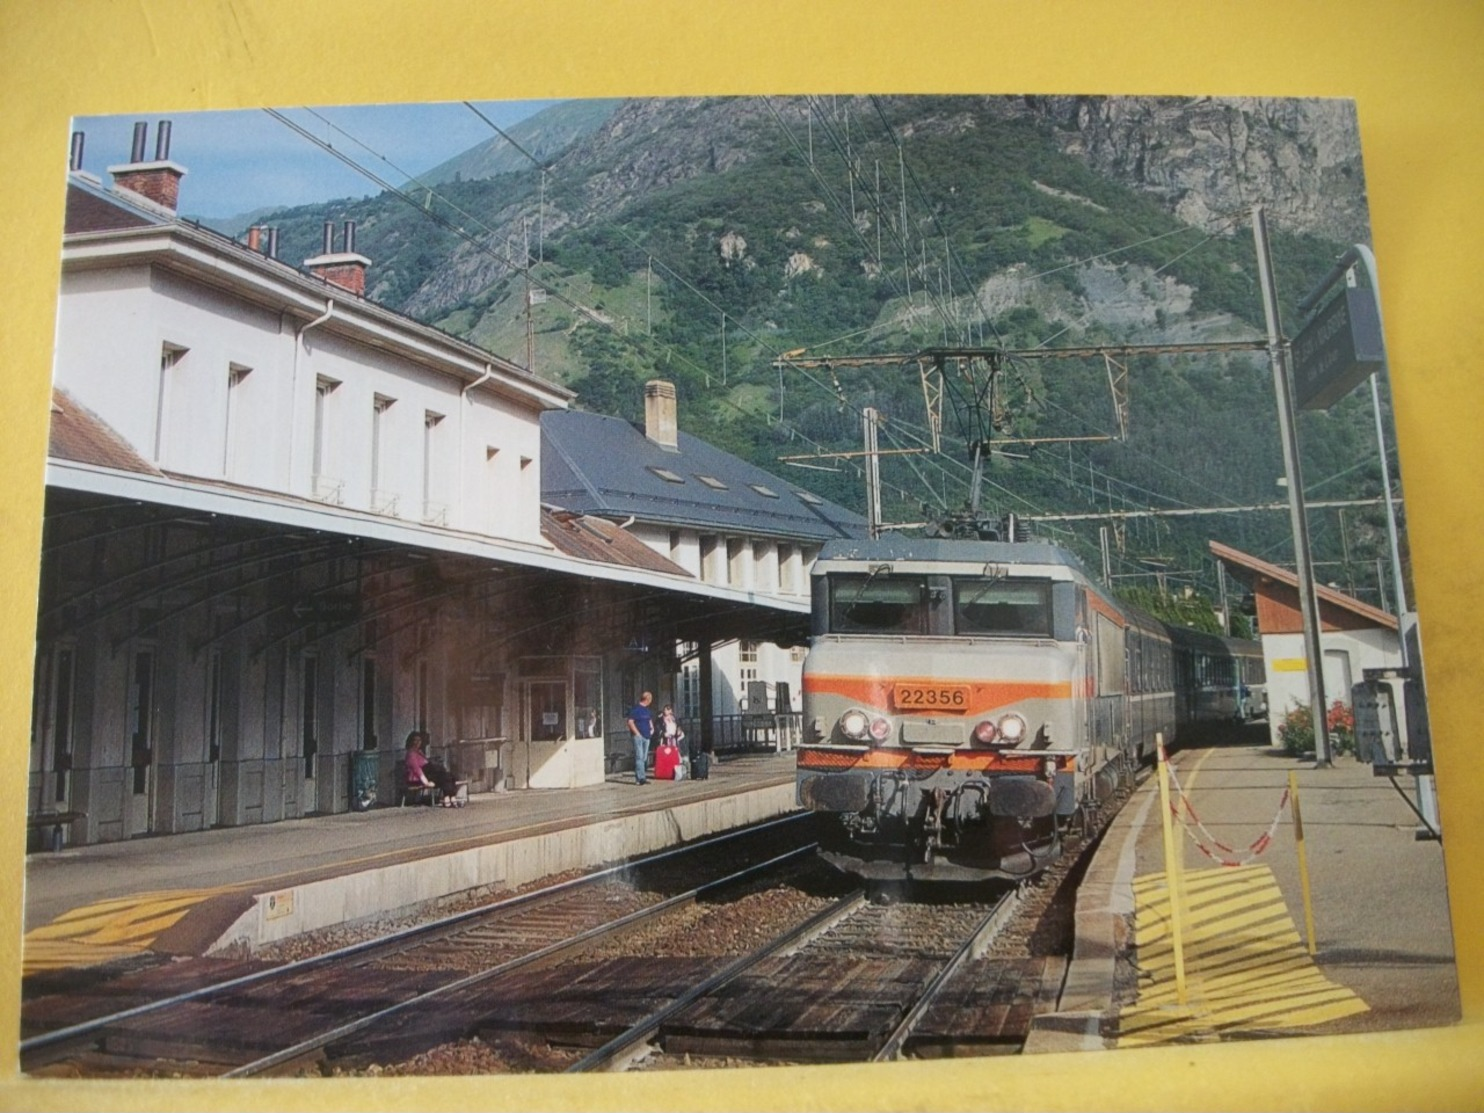 TRAIN 2447 - CPM. LA BB 22356, UN TER LYON PART DIEU-MODANE MARQUE L'ARRET EN GARE DE ST JEAN DE MAURIENNE. JUIN 2006. - Stazioni Con Treni